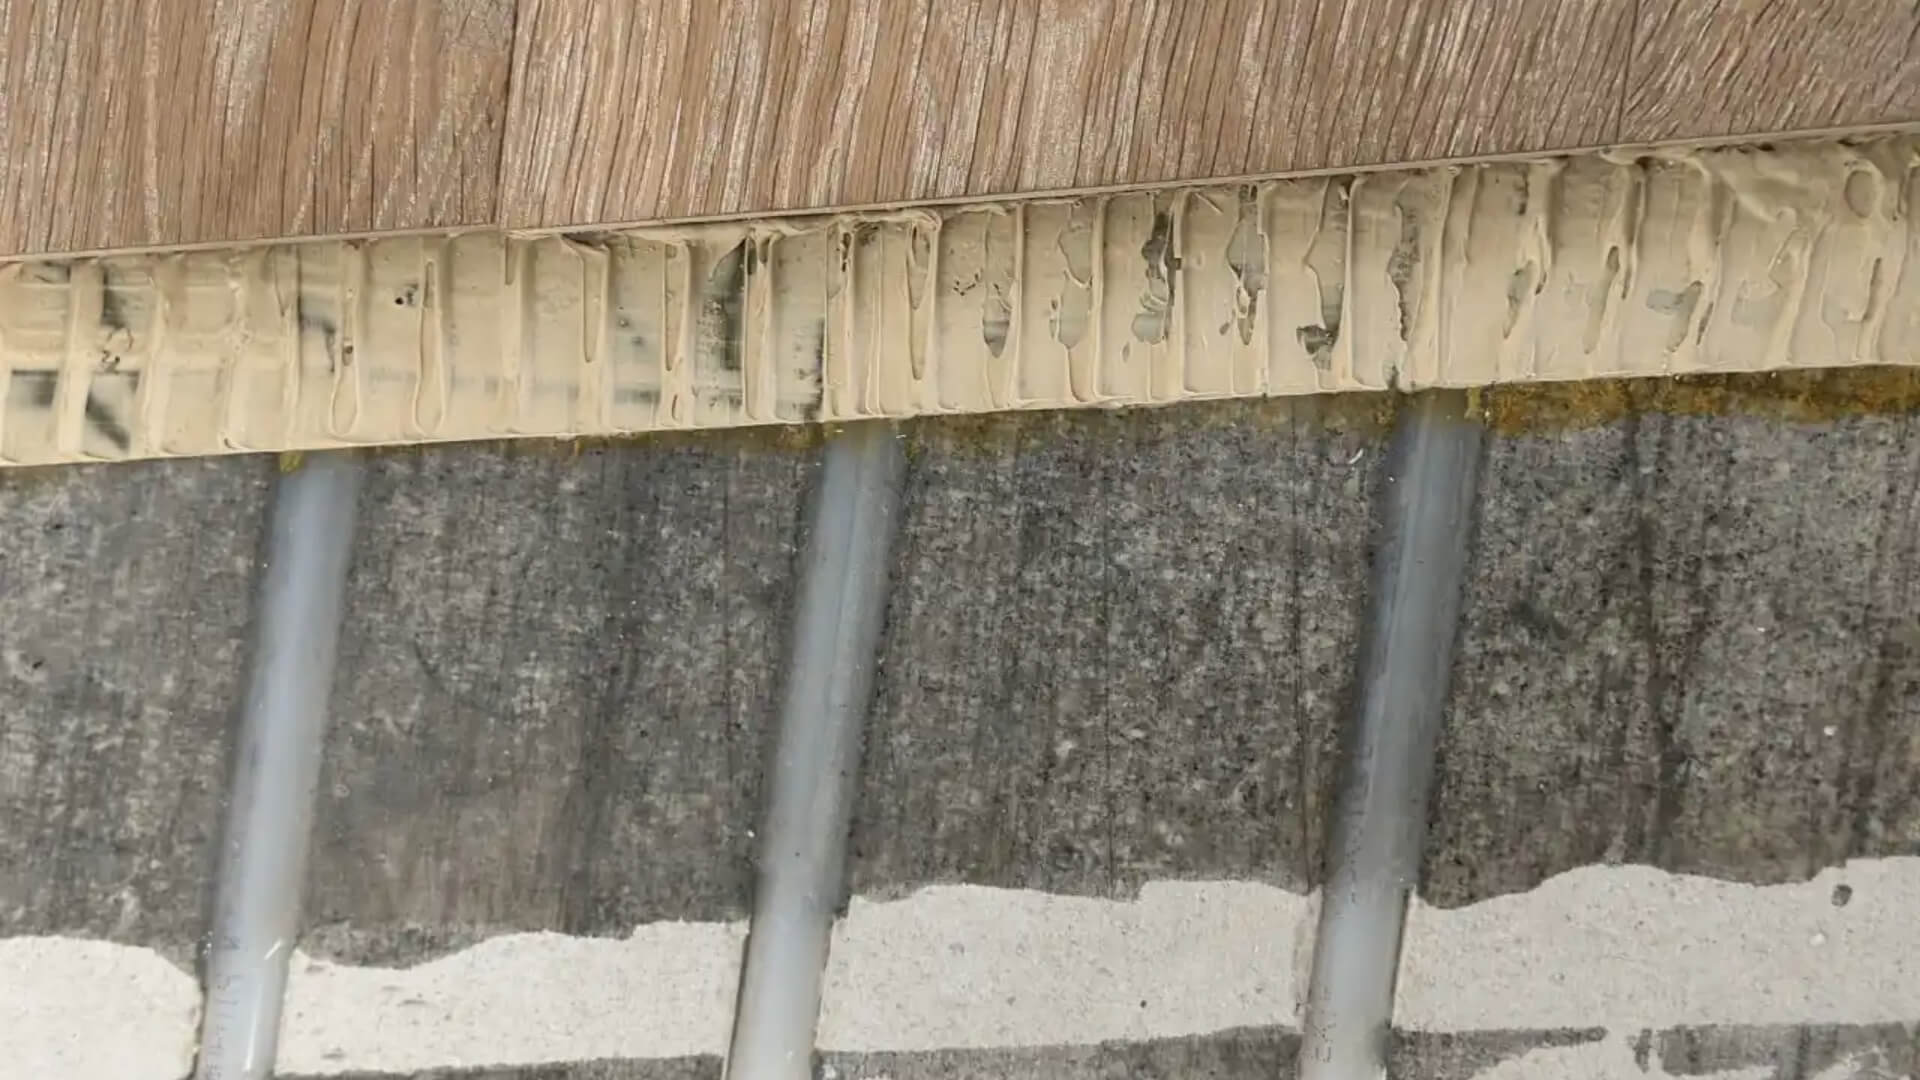 Vloerverwarming ingefreesd in Fermacell/Estrich vloerplaat, waarop een houten vloer is verlijmd